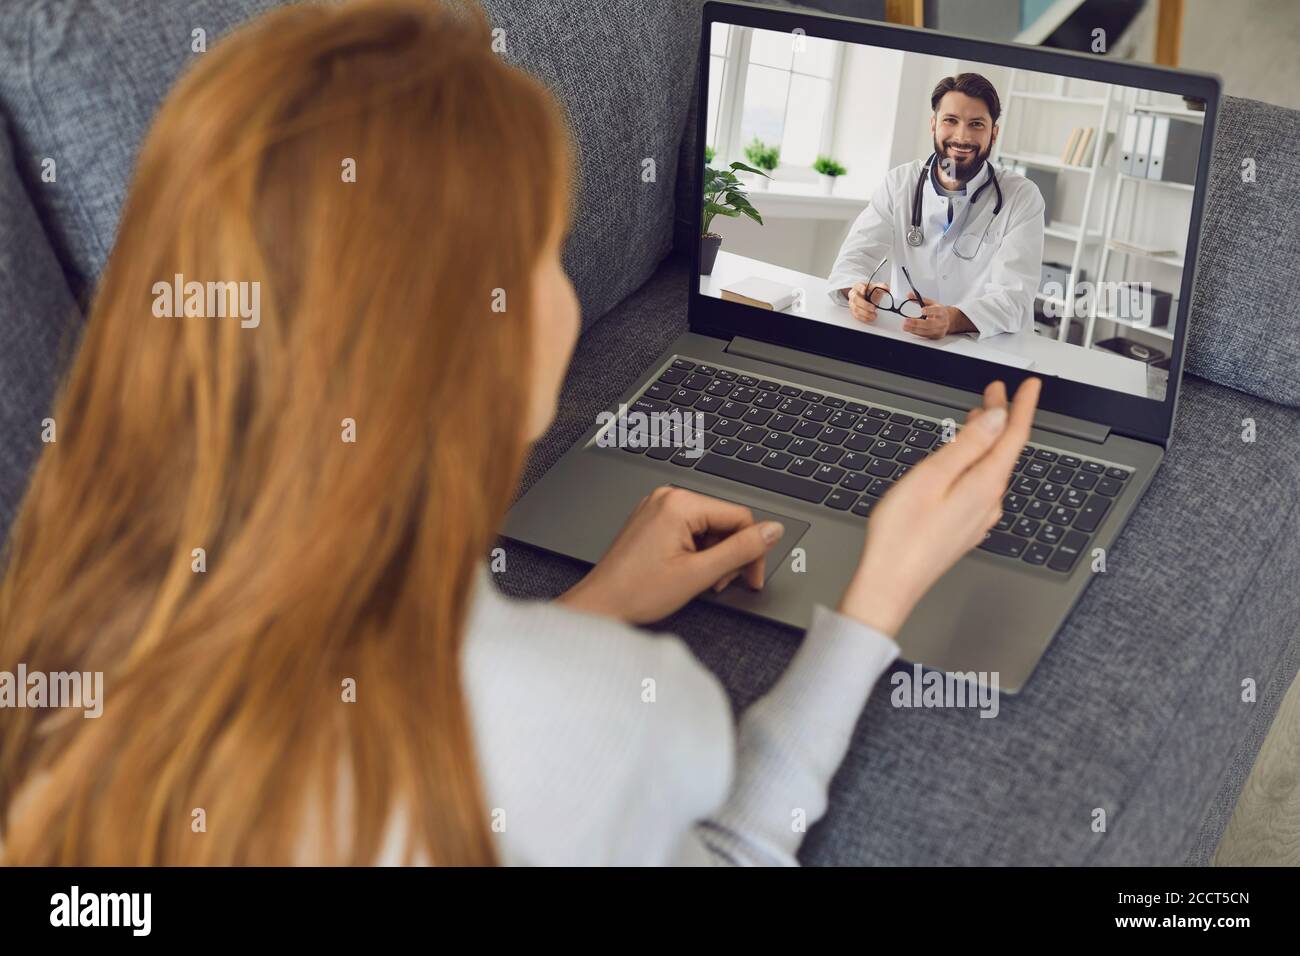 La femme se trouve sur le canapé à la maison et utilise un ordinateur portable pour appeler un médecin en ligne. Banque D'Images